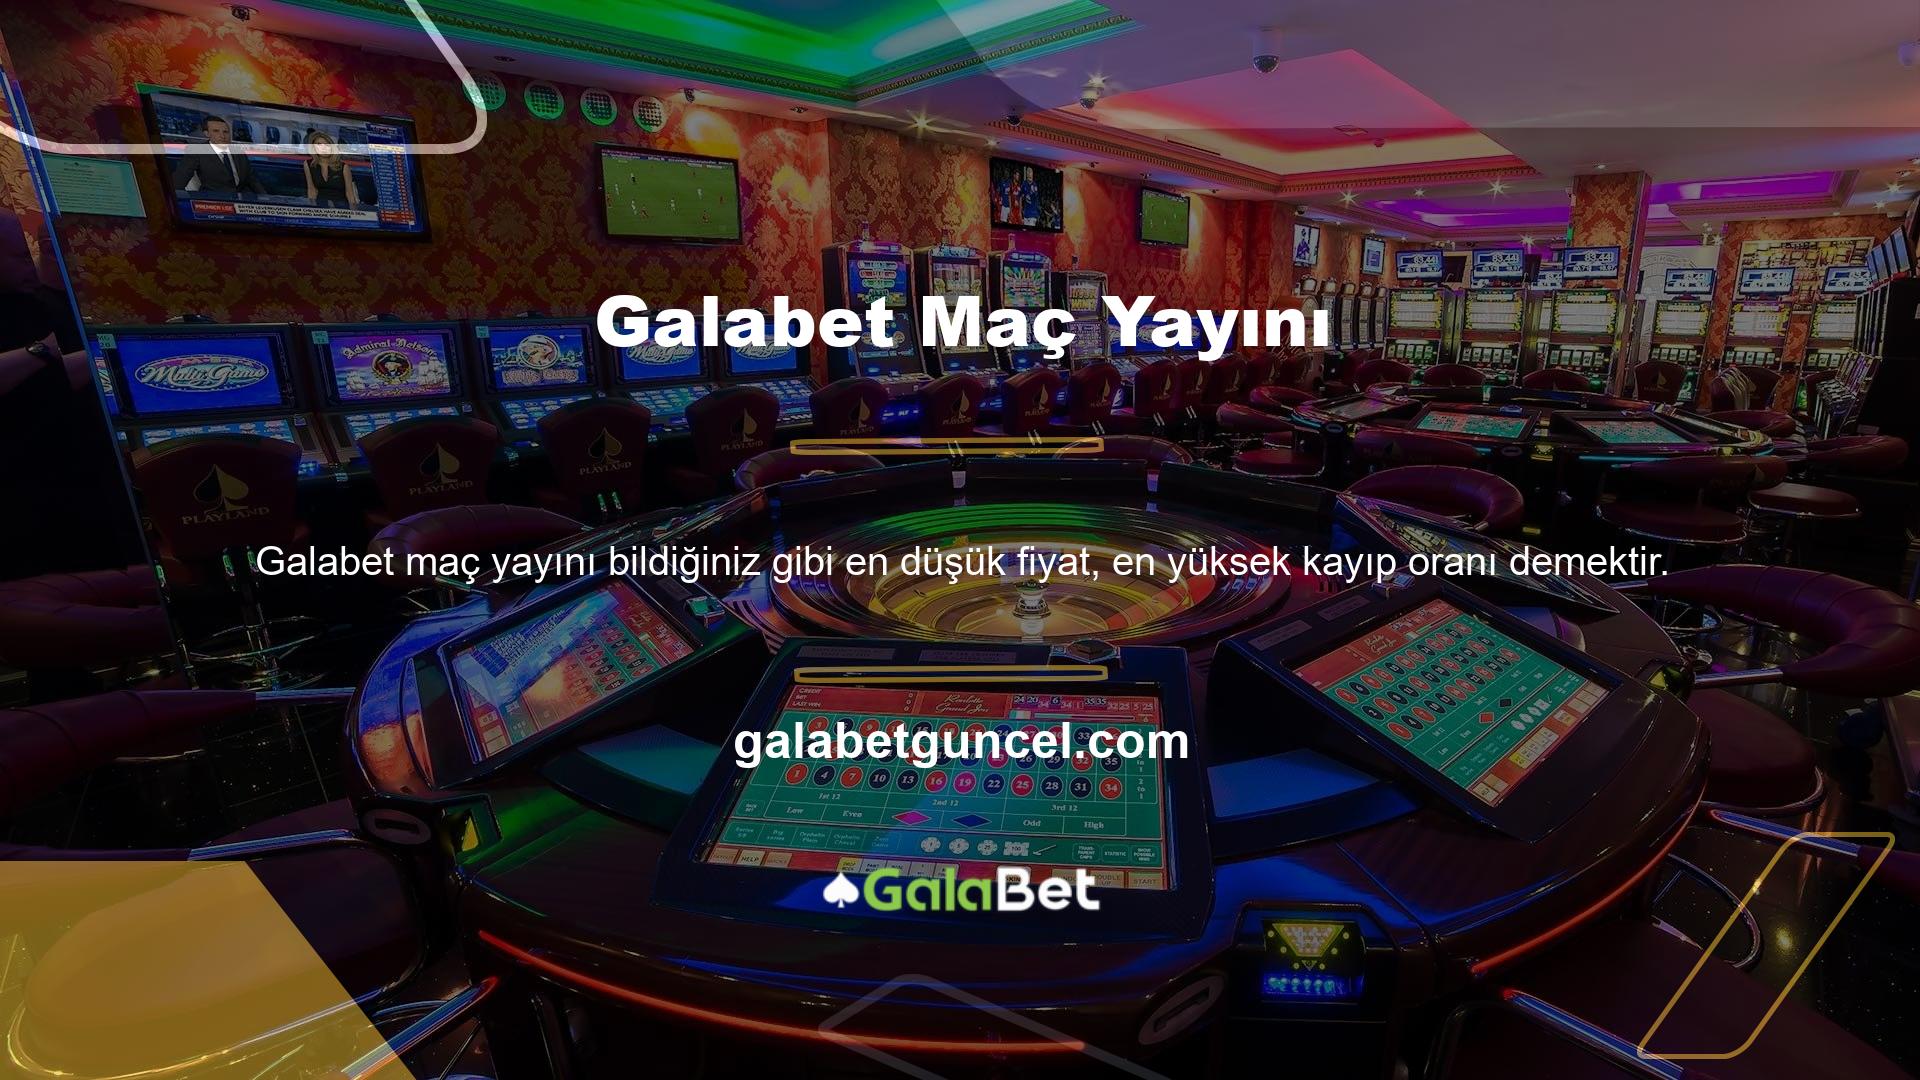 Türkiye'deki en popüler yasal bahis siteleri ile böyle bir casino oluşturmak istiyorsanız, sunduğumuz ek ücretlerden büyük ölçüde yararlanabilirsiniz